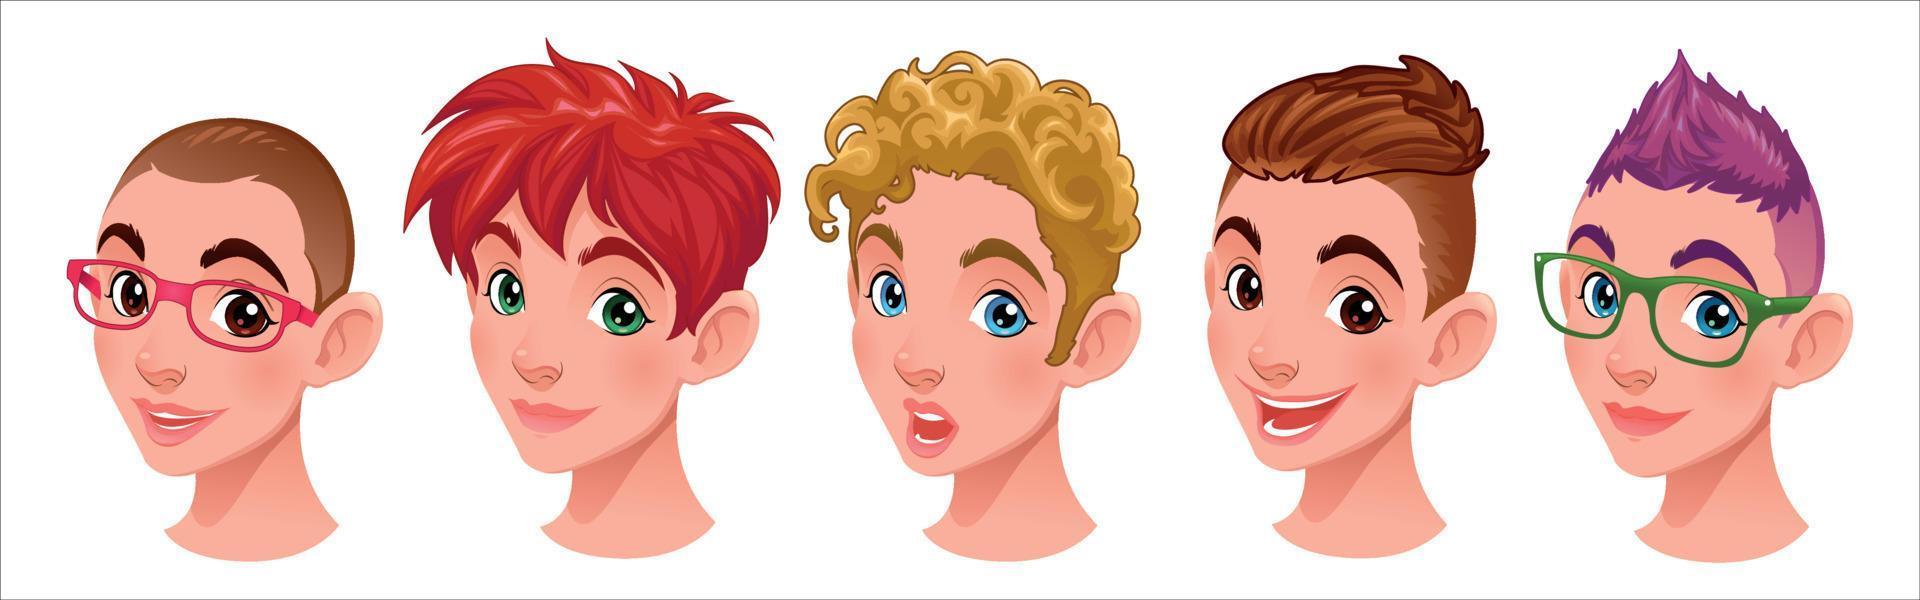 Set of avatars flat style vector